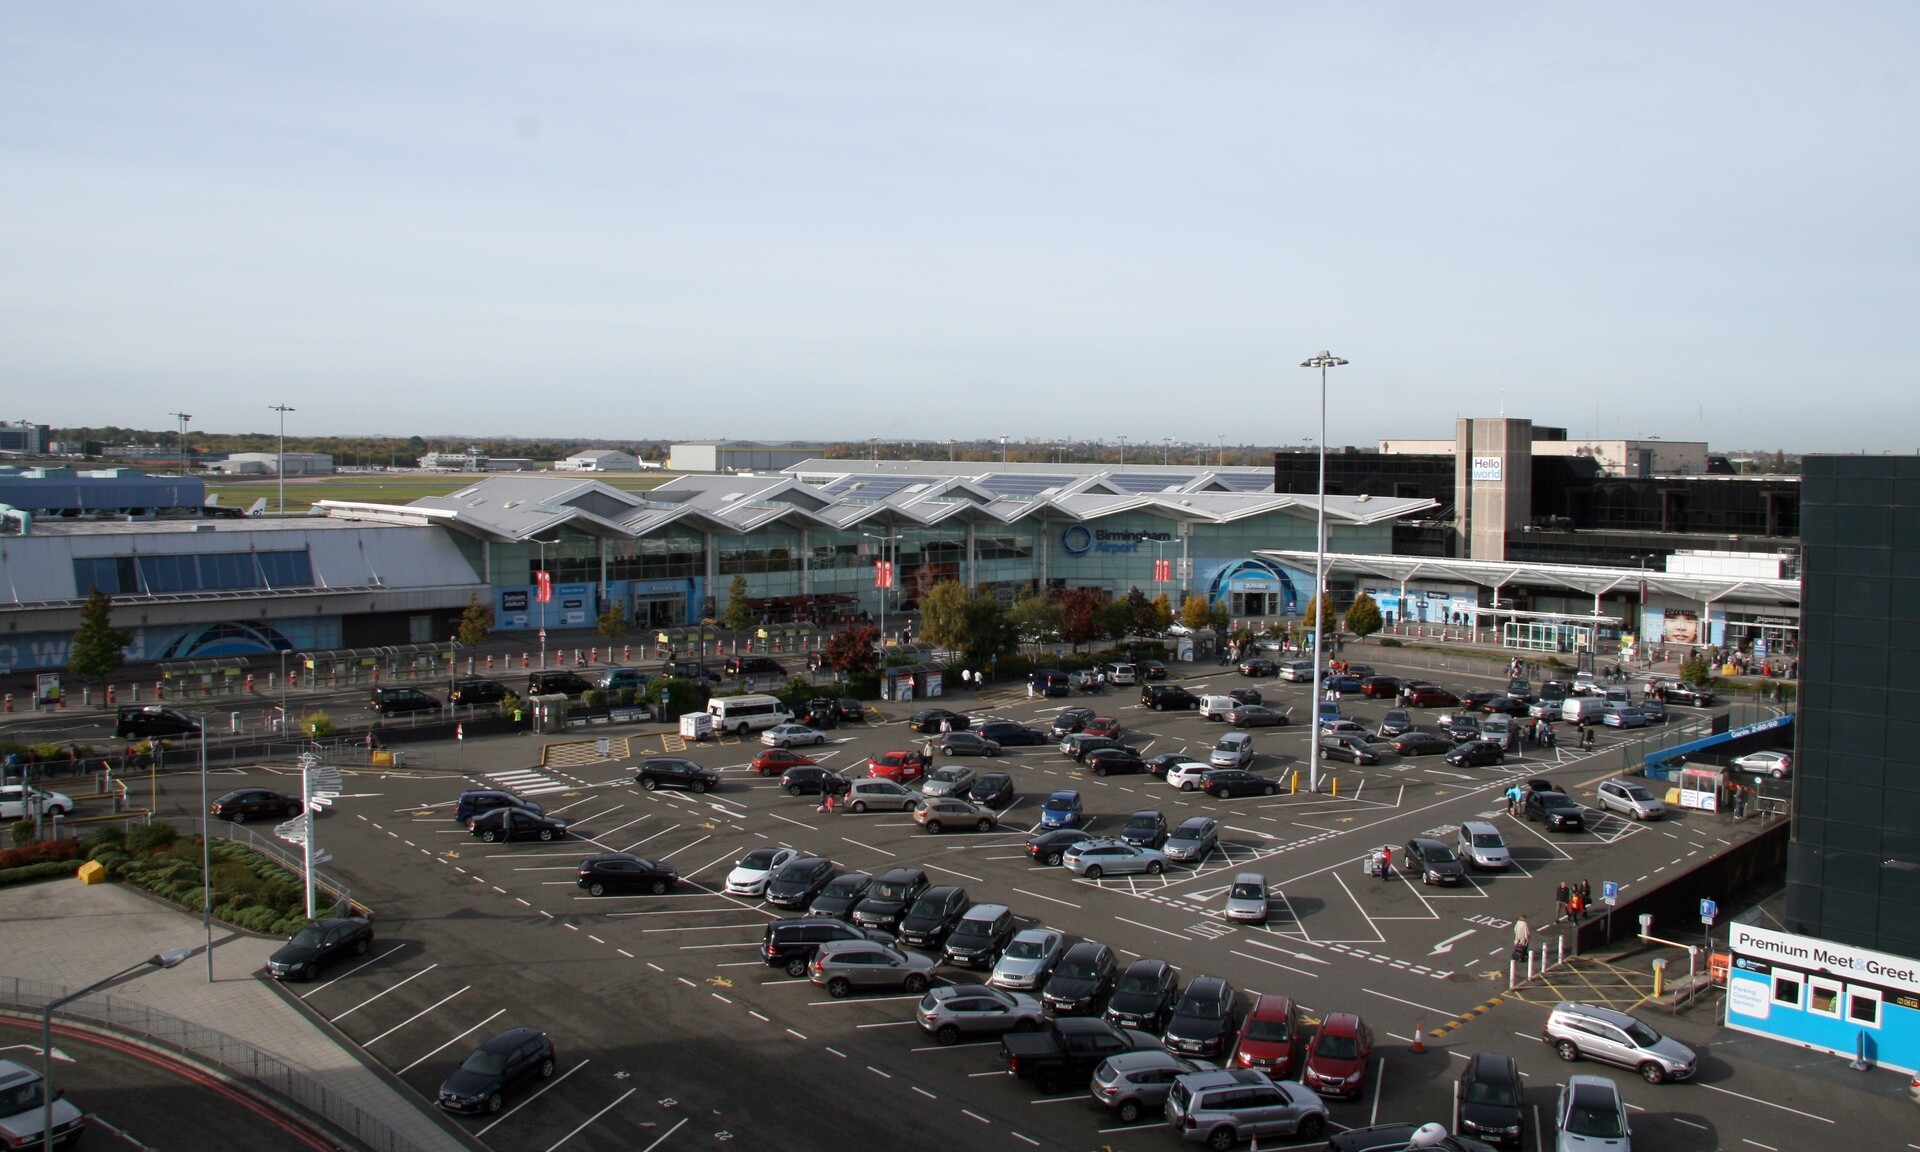 Βρετανία: Έκλεισε προσωρινά το αεροδρόμιο του Μπέρμιγχαμ λόγω ύποπτου αντικειμένου σε αεροπλάνο Ειδήσεις